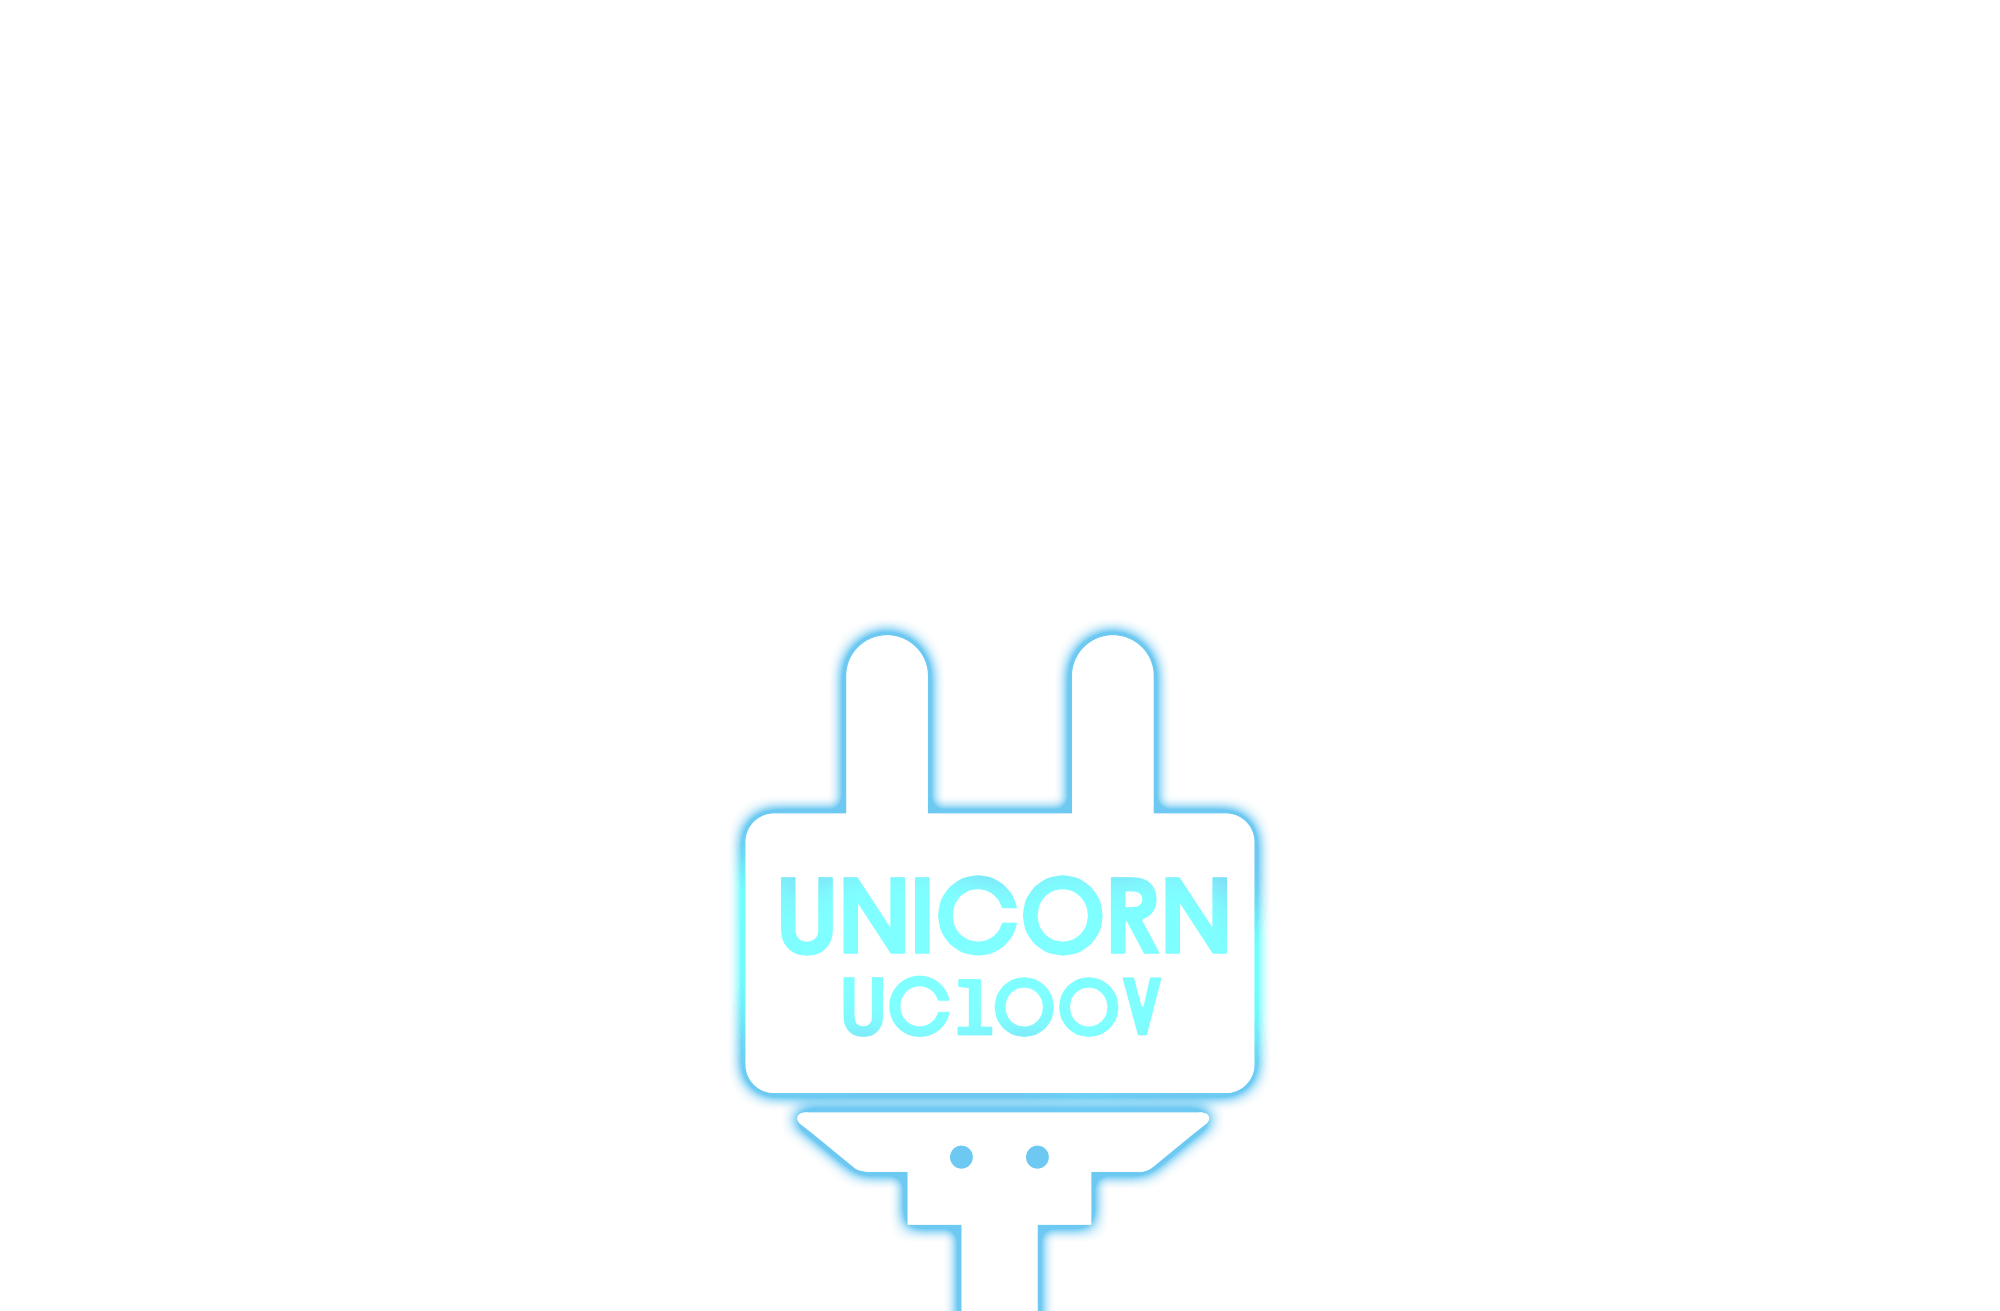 ユニコーン アルバム『UC100V』 | ユニコーン100周年特設サイト